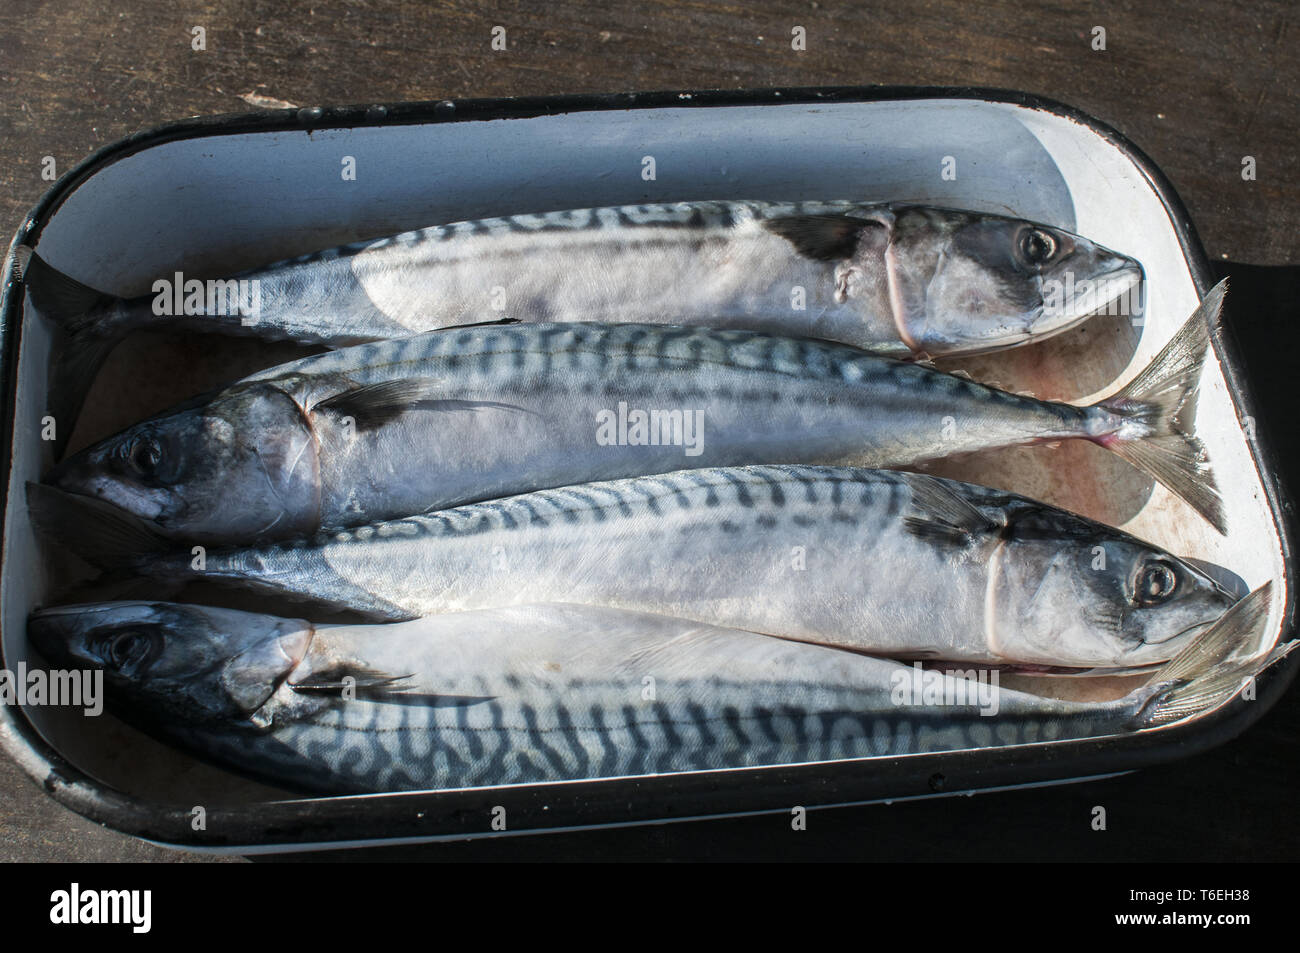 Whole mackerel fishes in tray Stock Photo